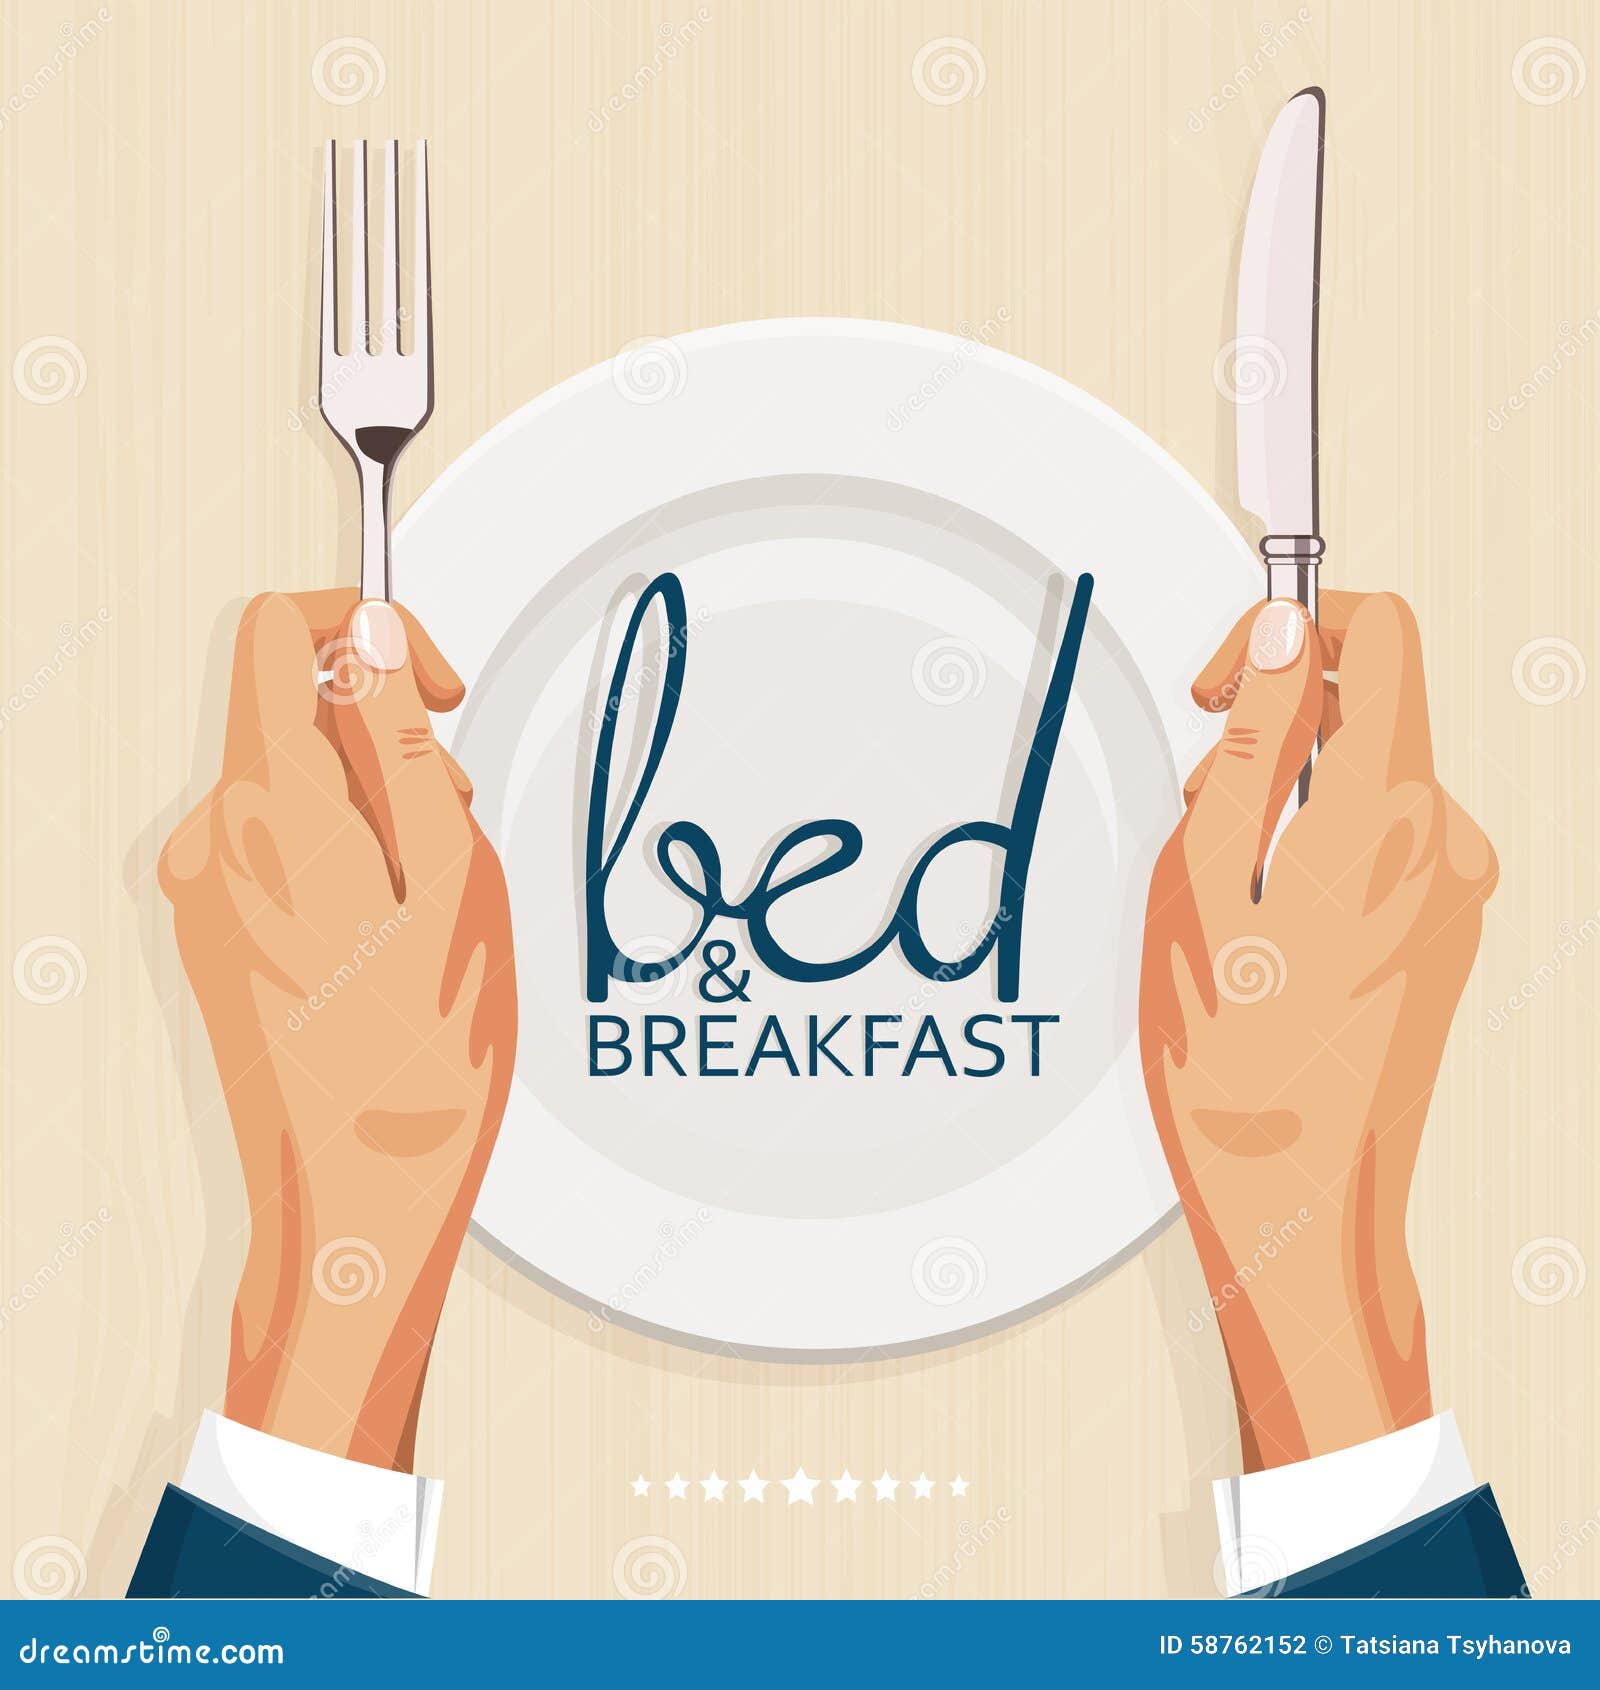 Bed & Breakfast Business Plans:https://extraessay.top